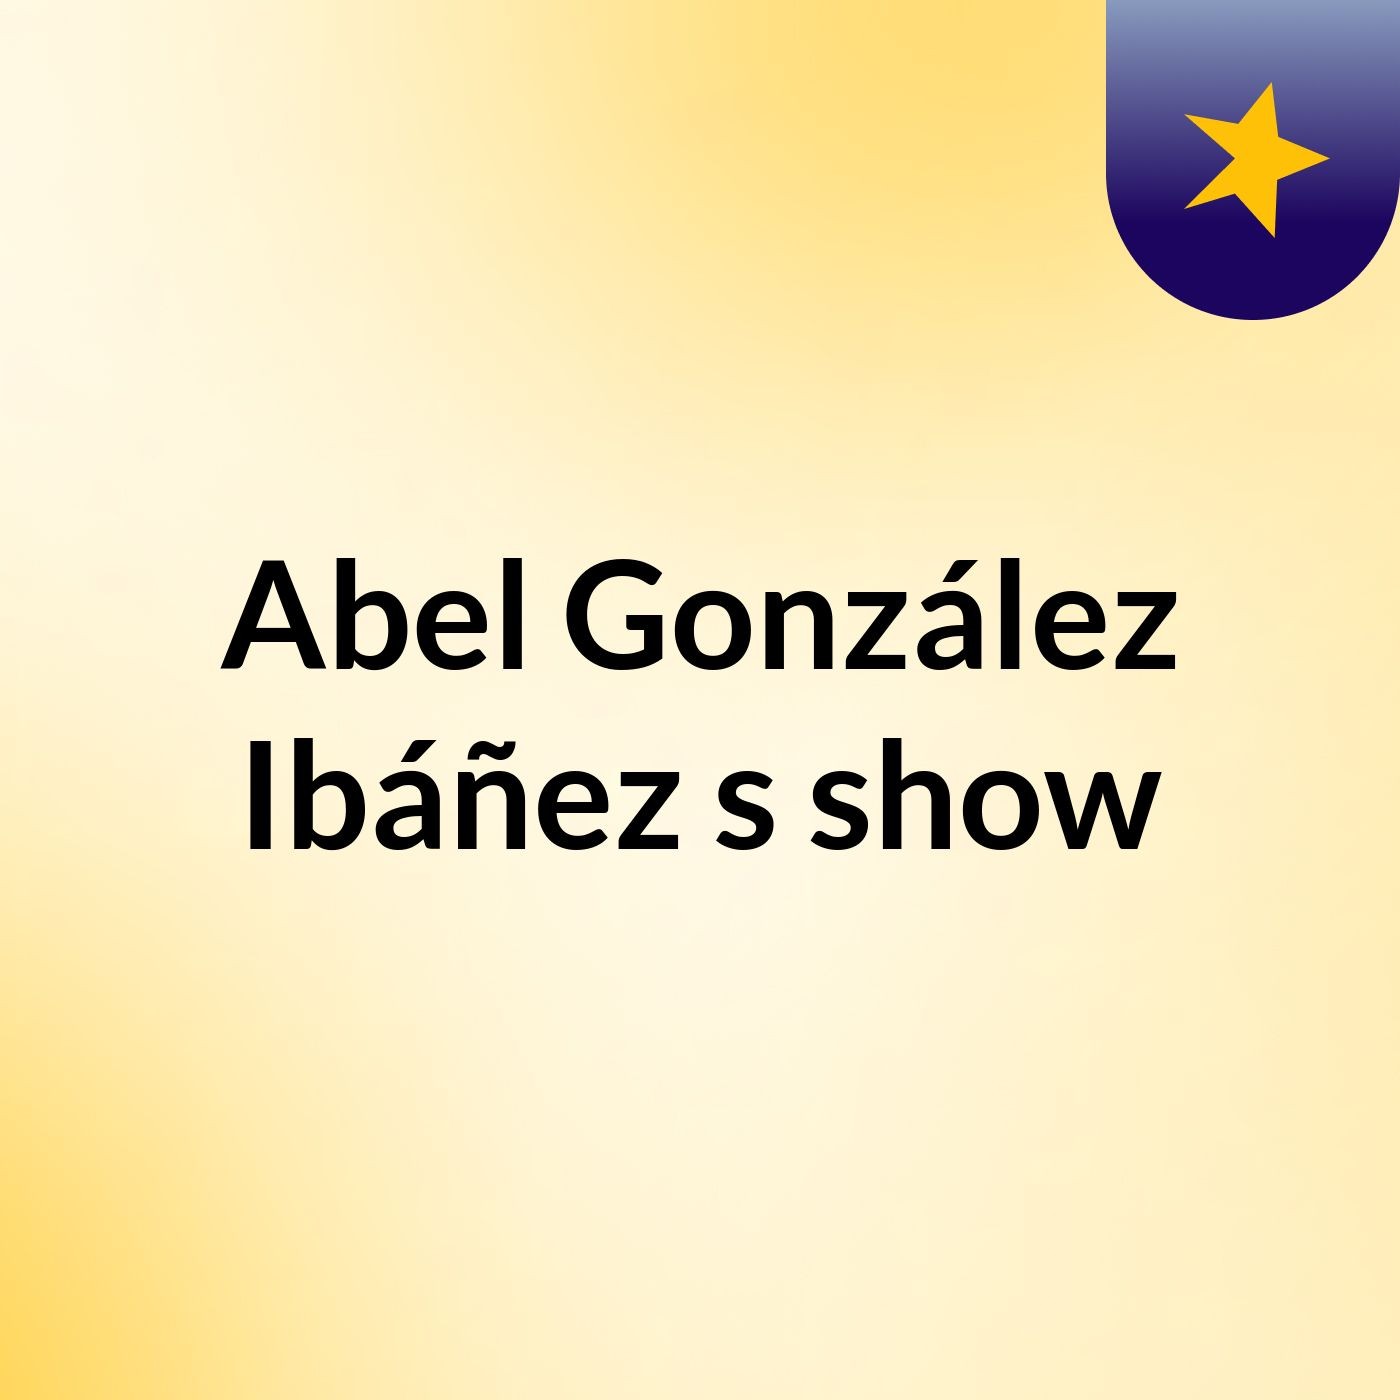 Abel González Ibáñez's show